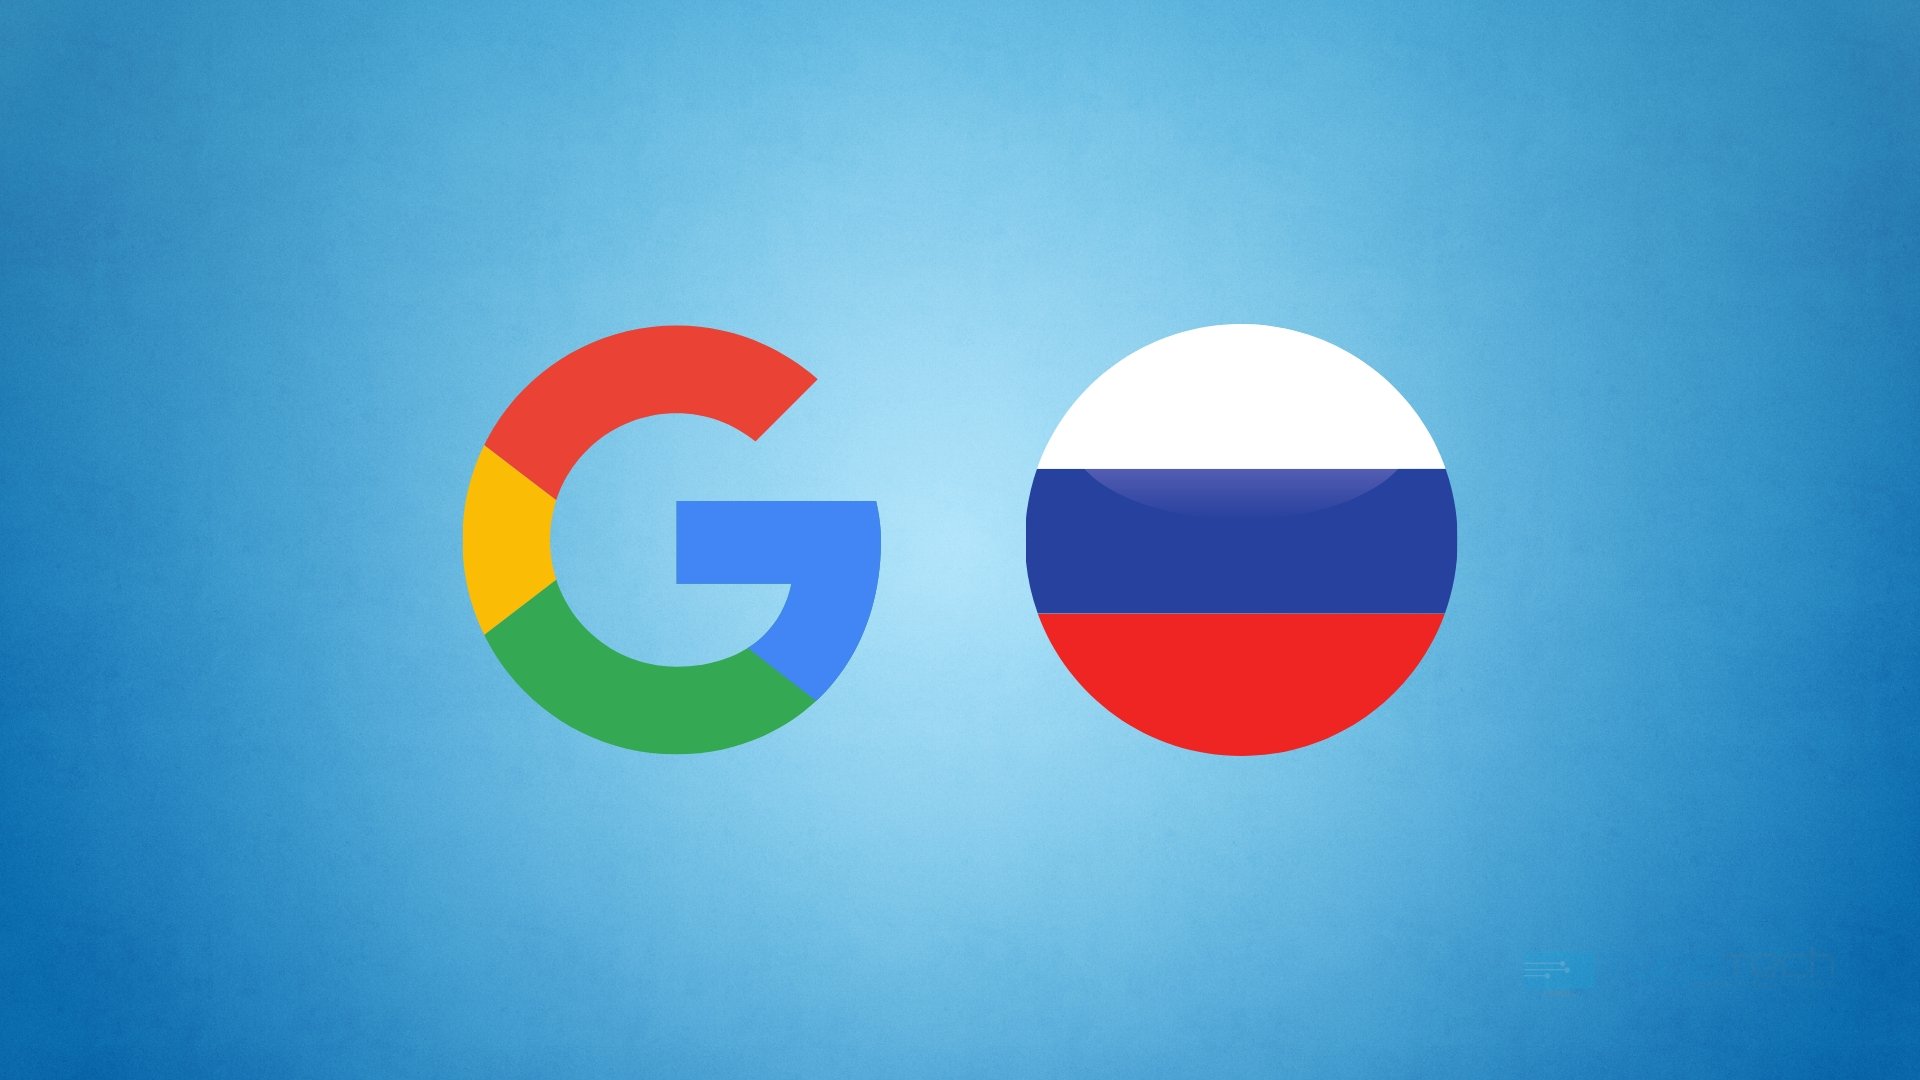 Google vs Russia